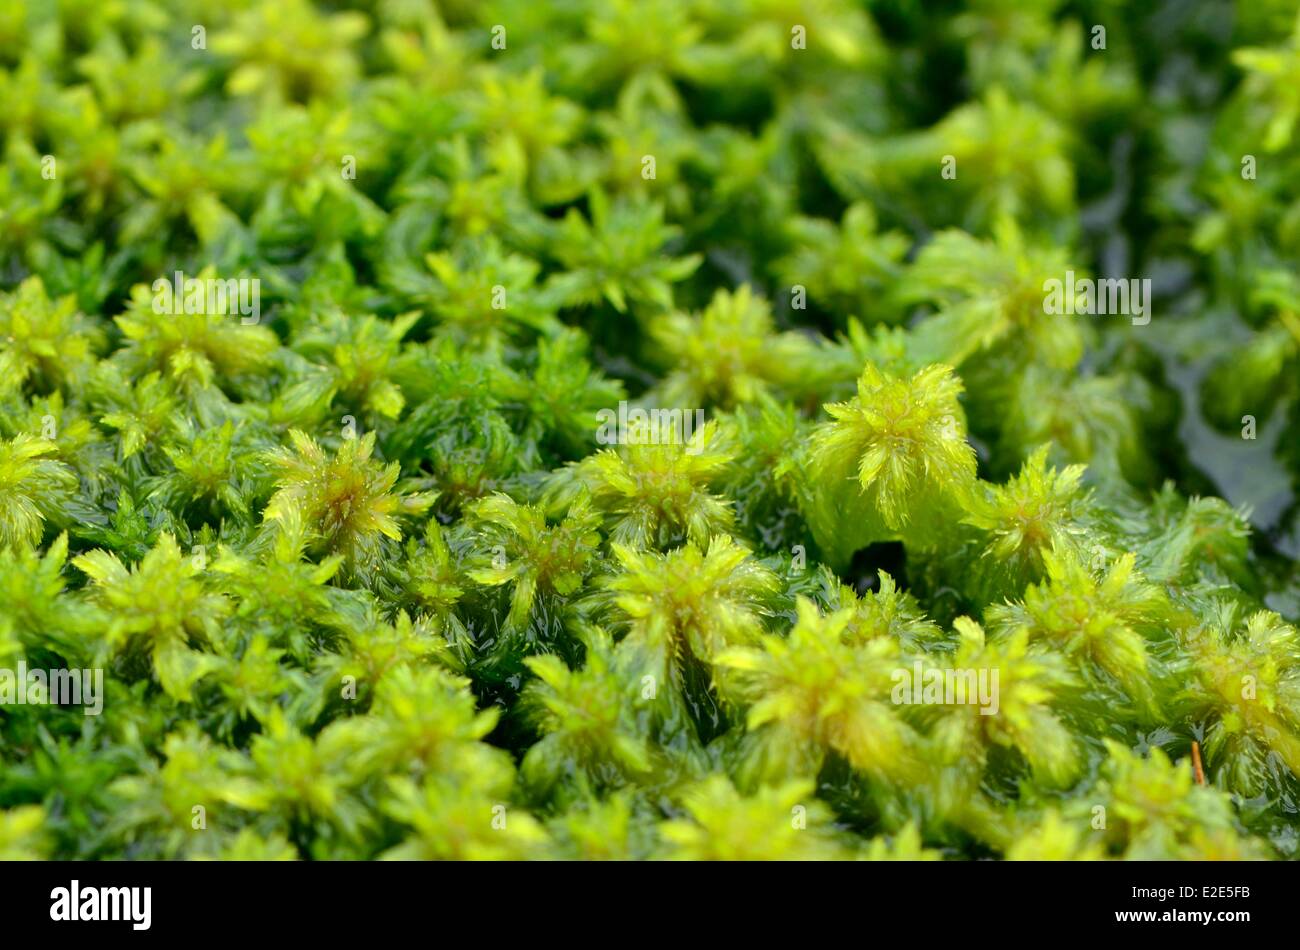 France, Vosges, Gerardmer, peat, sphagnum moss (Sphagnum sp) Stock Photo